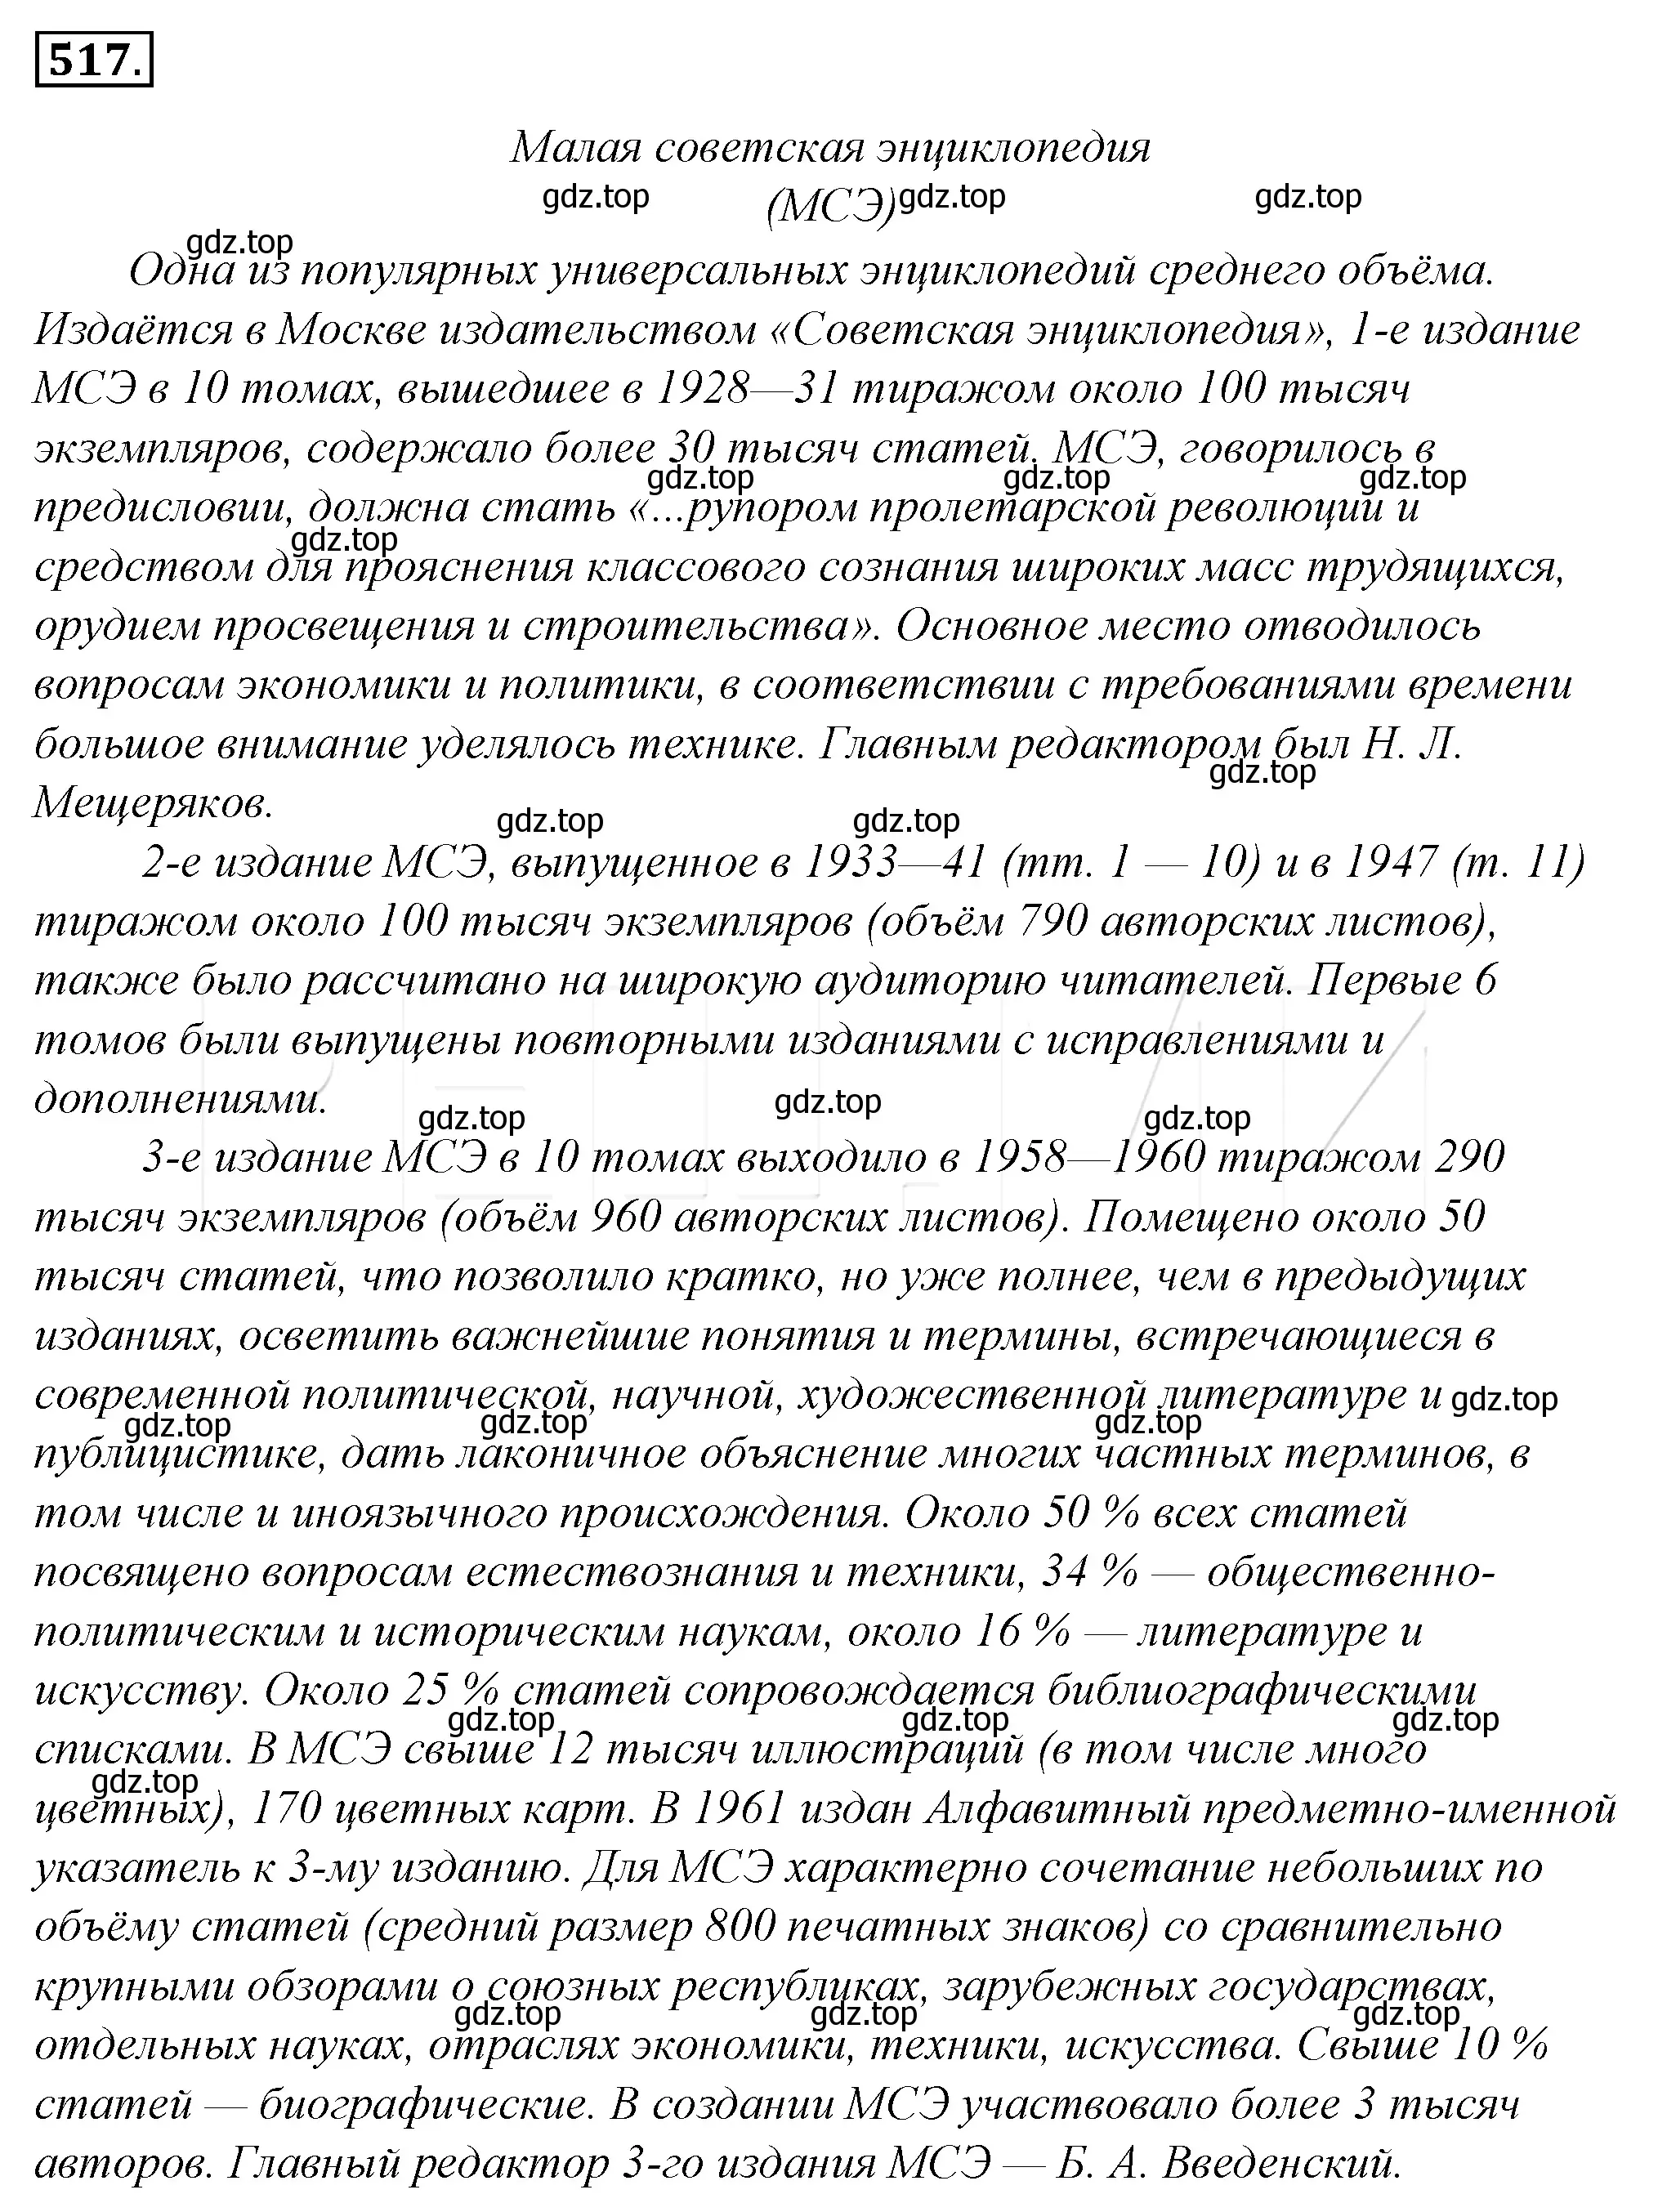 Решение 4. номер 192 (страница 270) гдз по русскому языку 10-11 класс Гольцова, Шамшин, учебник 2 часть